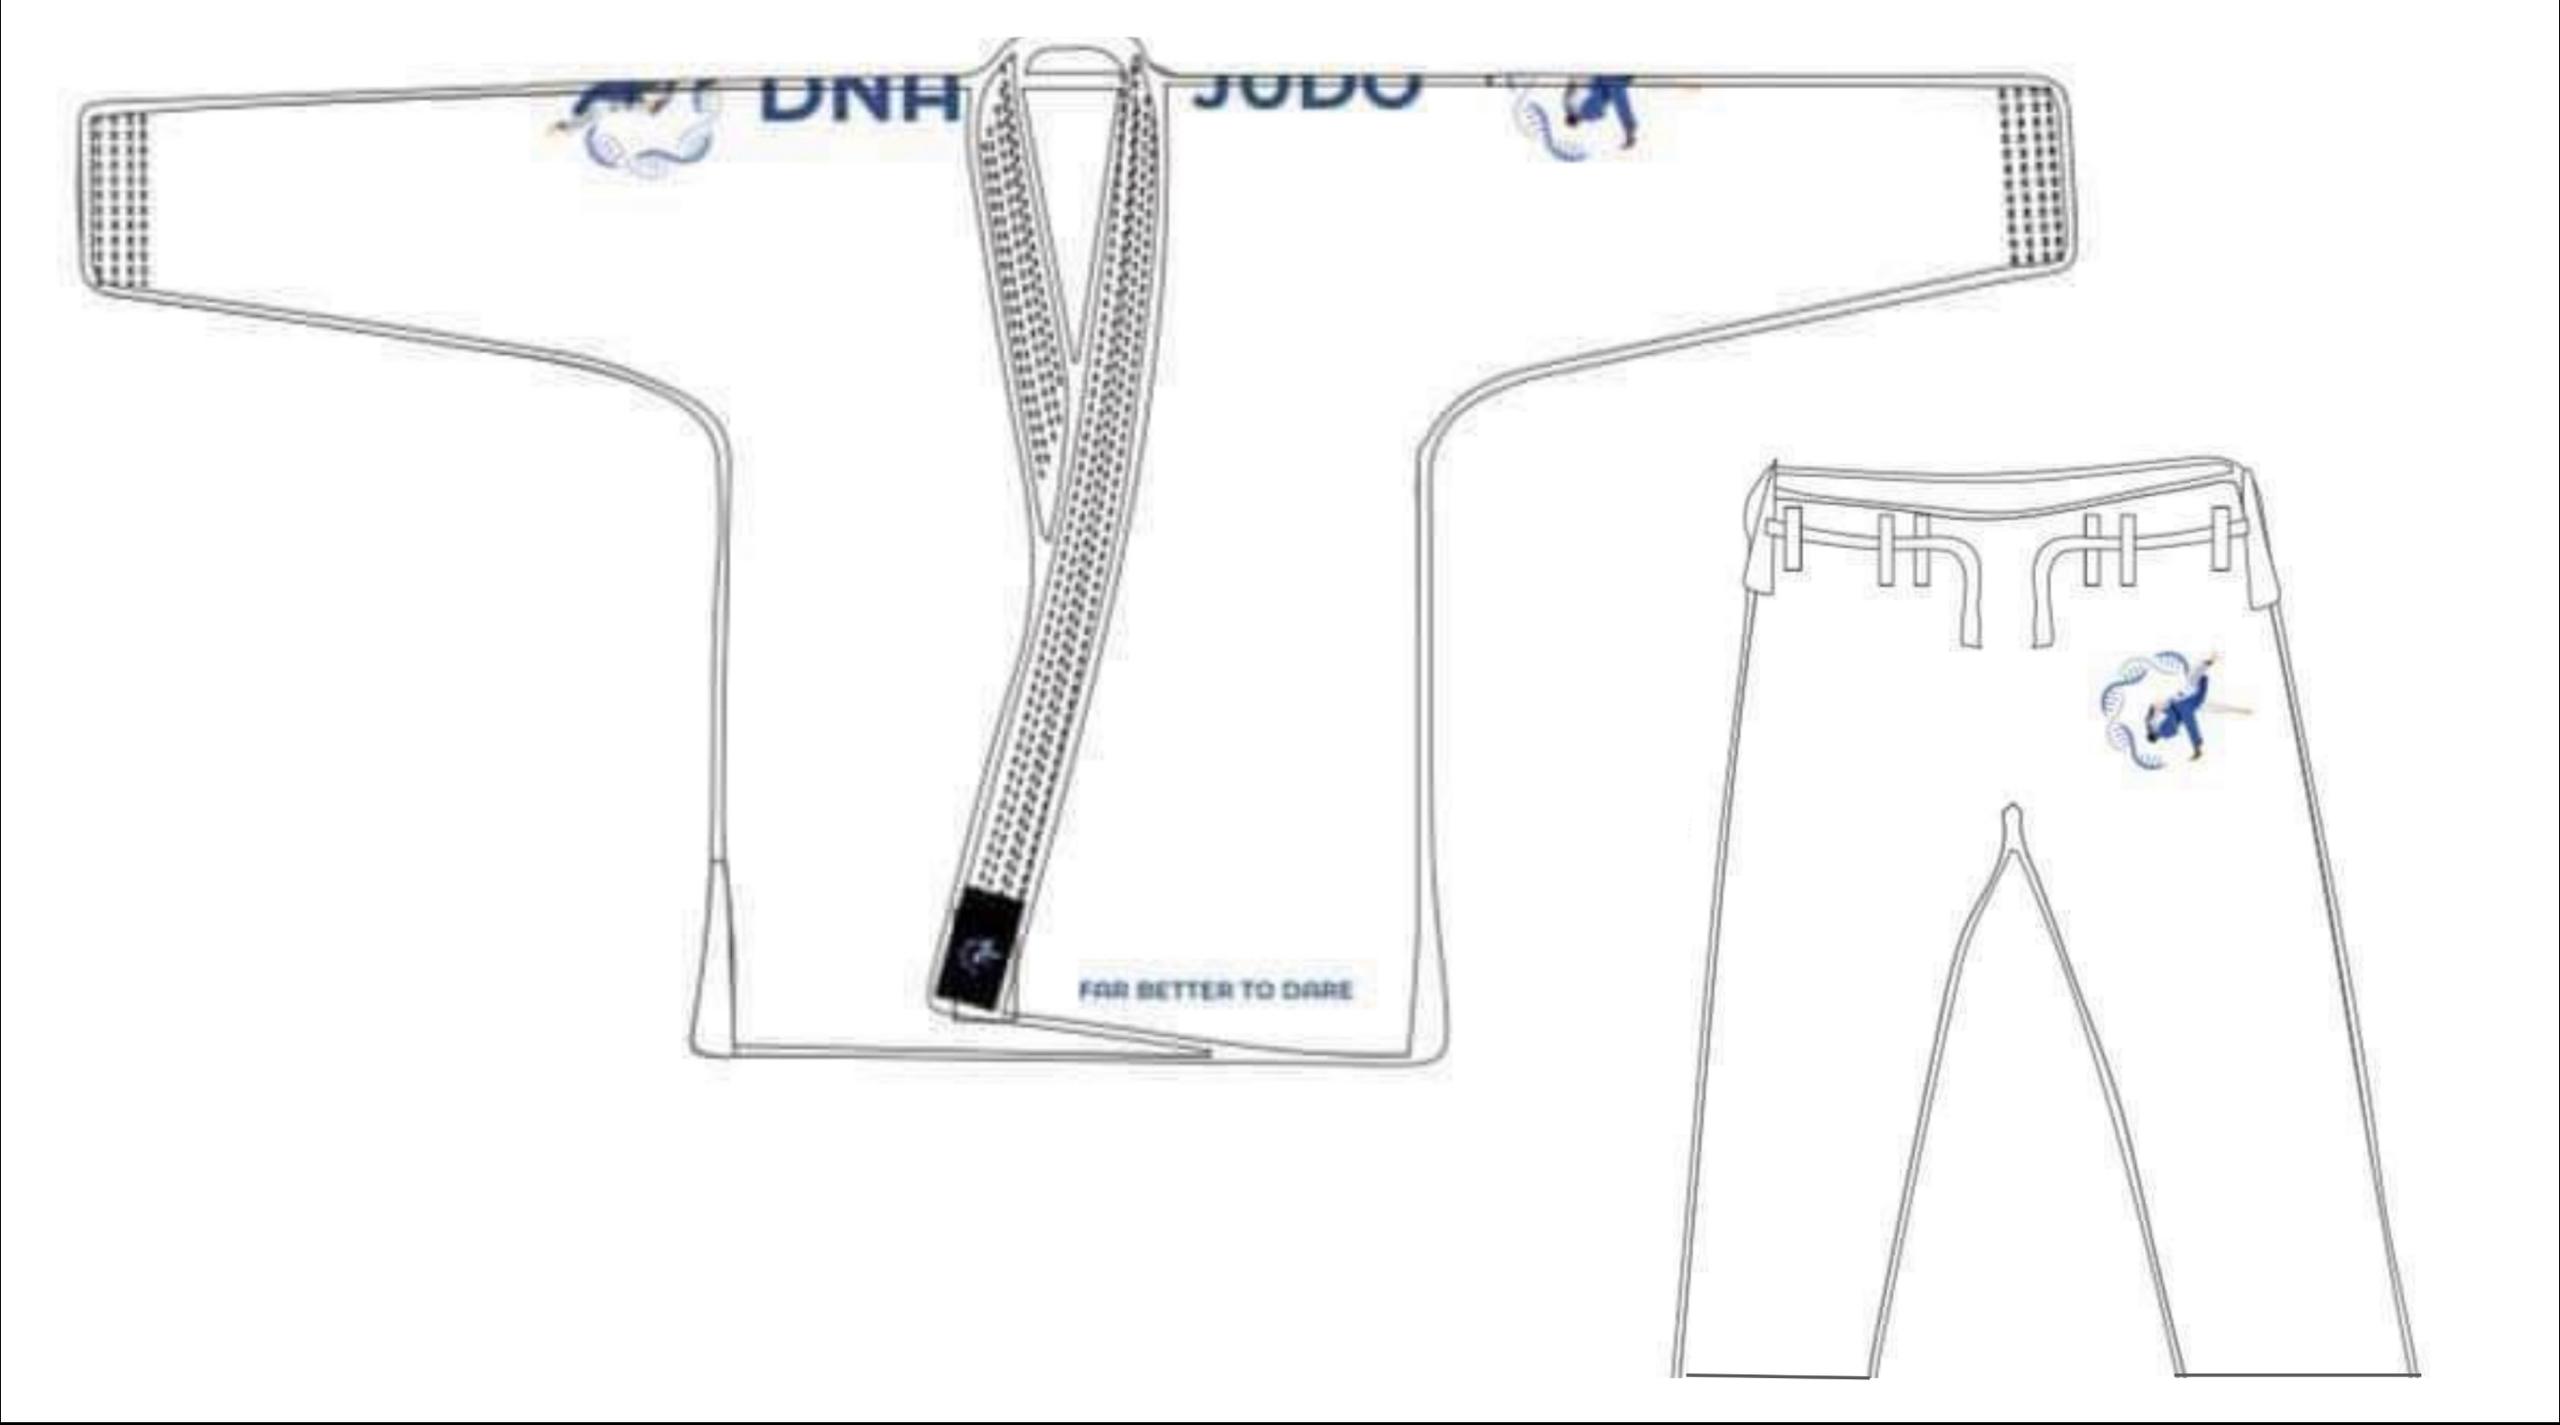 White DNA Junior Judogi (Judo Kit)